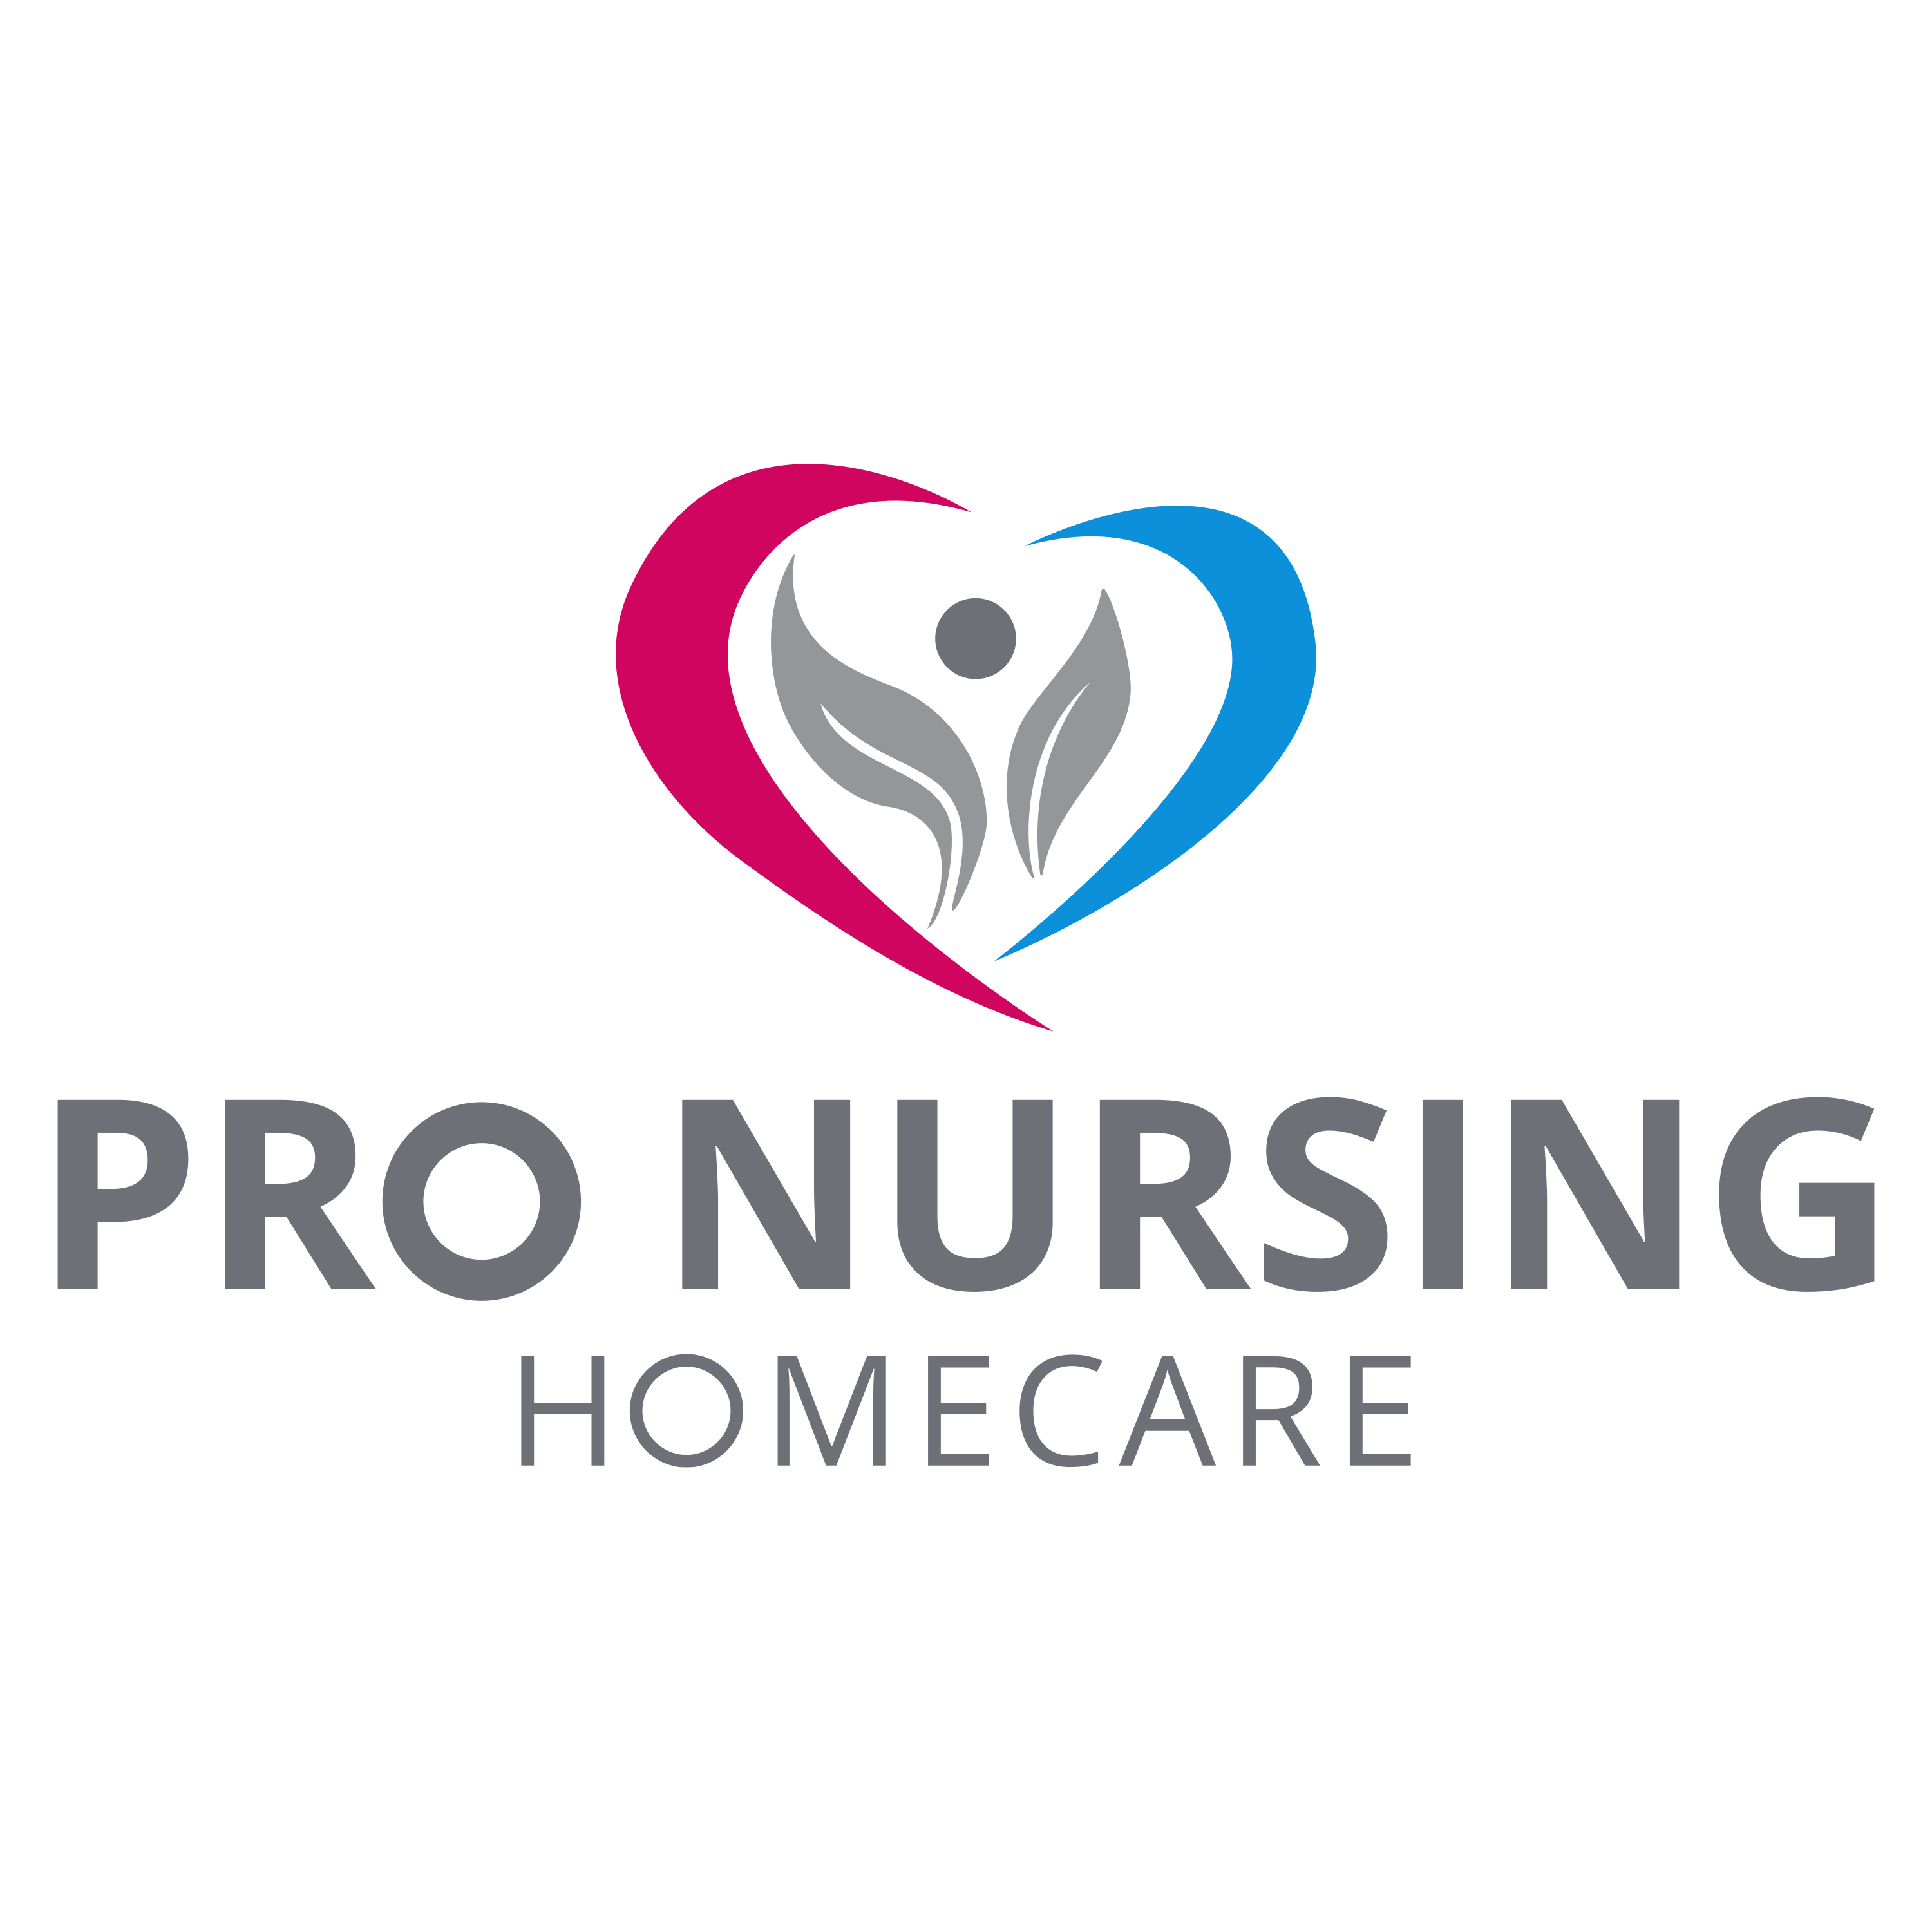 Pro Nursing Homecare - Home Care